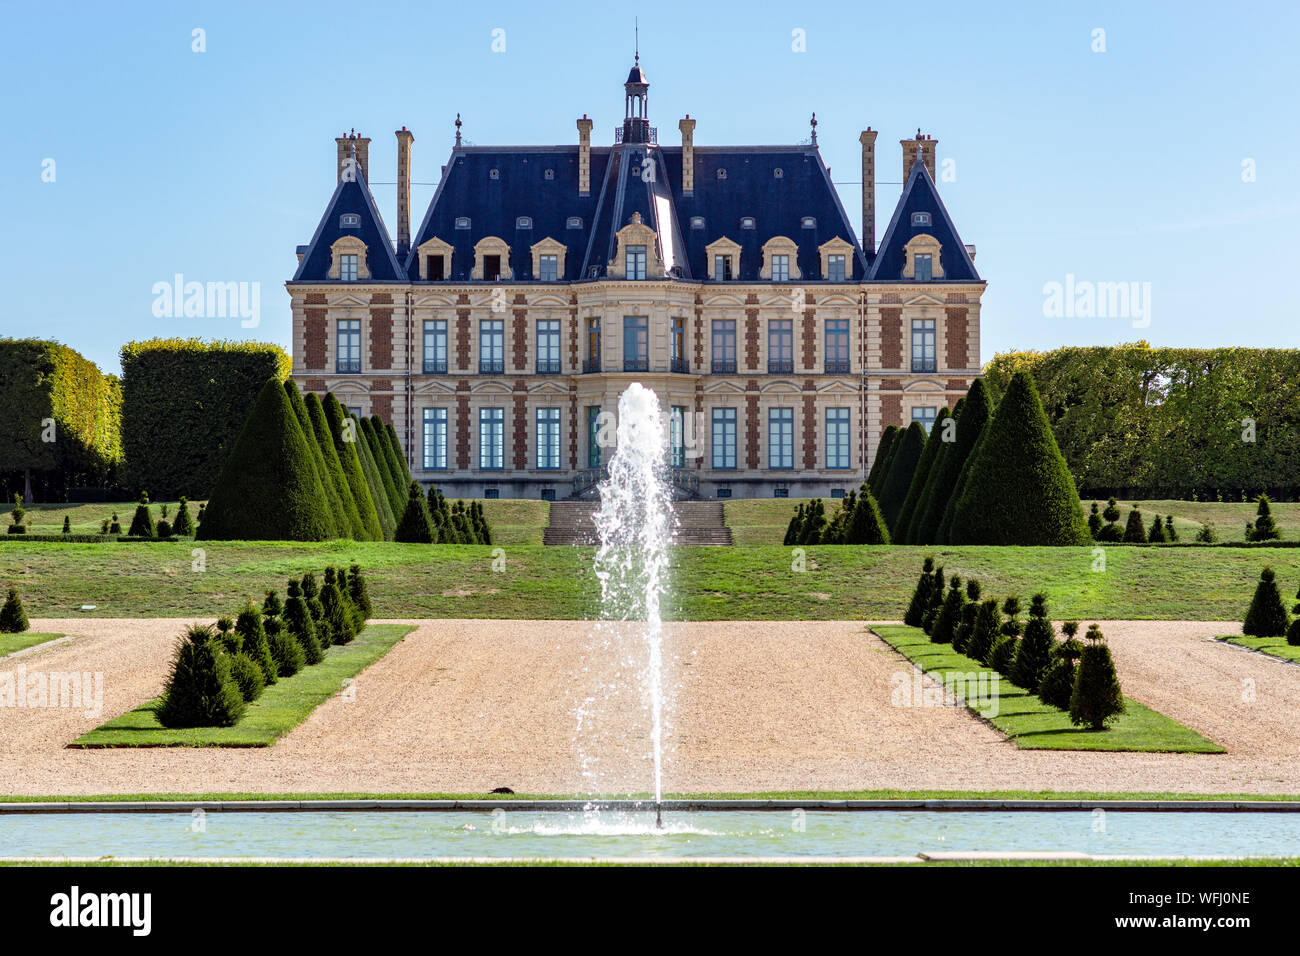 Chateau and parc de Sceaux in summer - Hauts-de-Seine, France Stock Photo